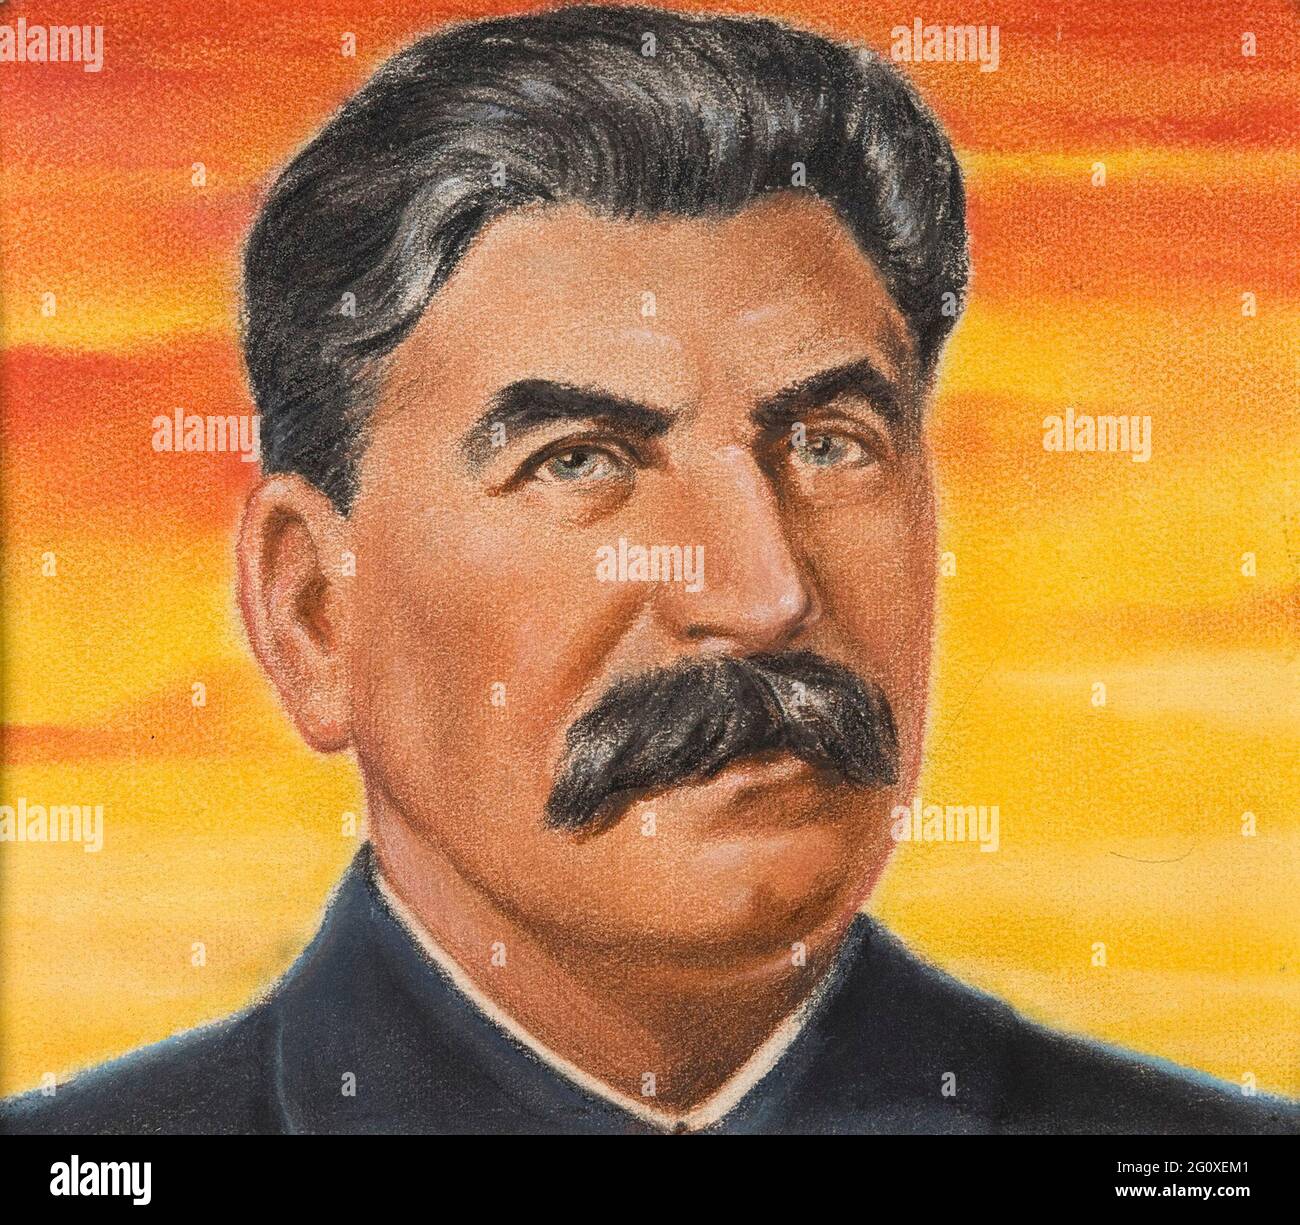 Ein Porträt von Josef Stalin, gezeichnet für das britische Informationsministerium vom österreichischen Künstler William Timym Stockfoto